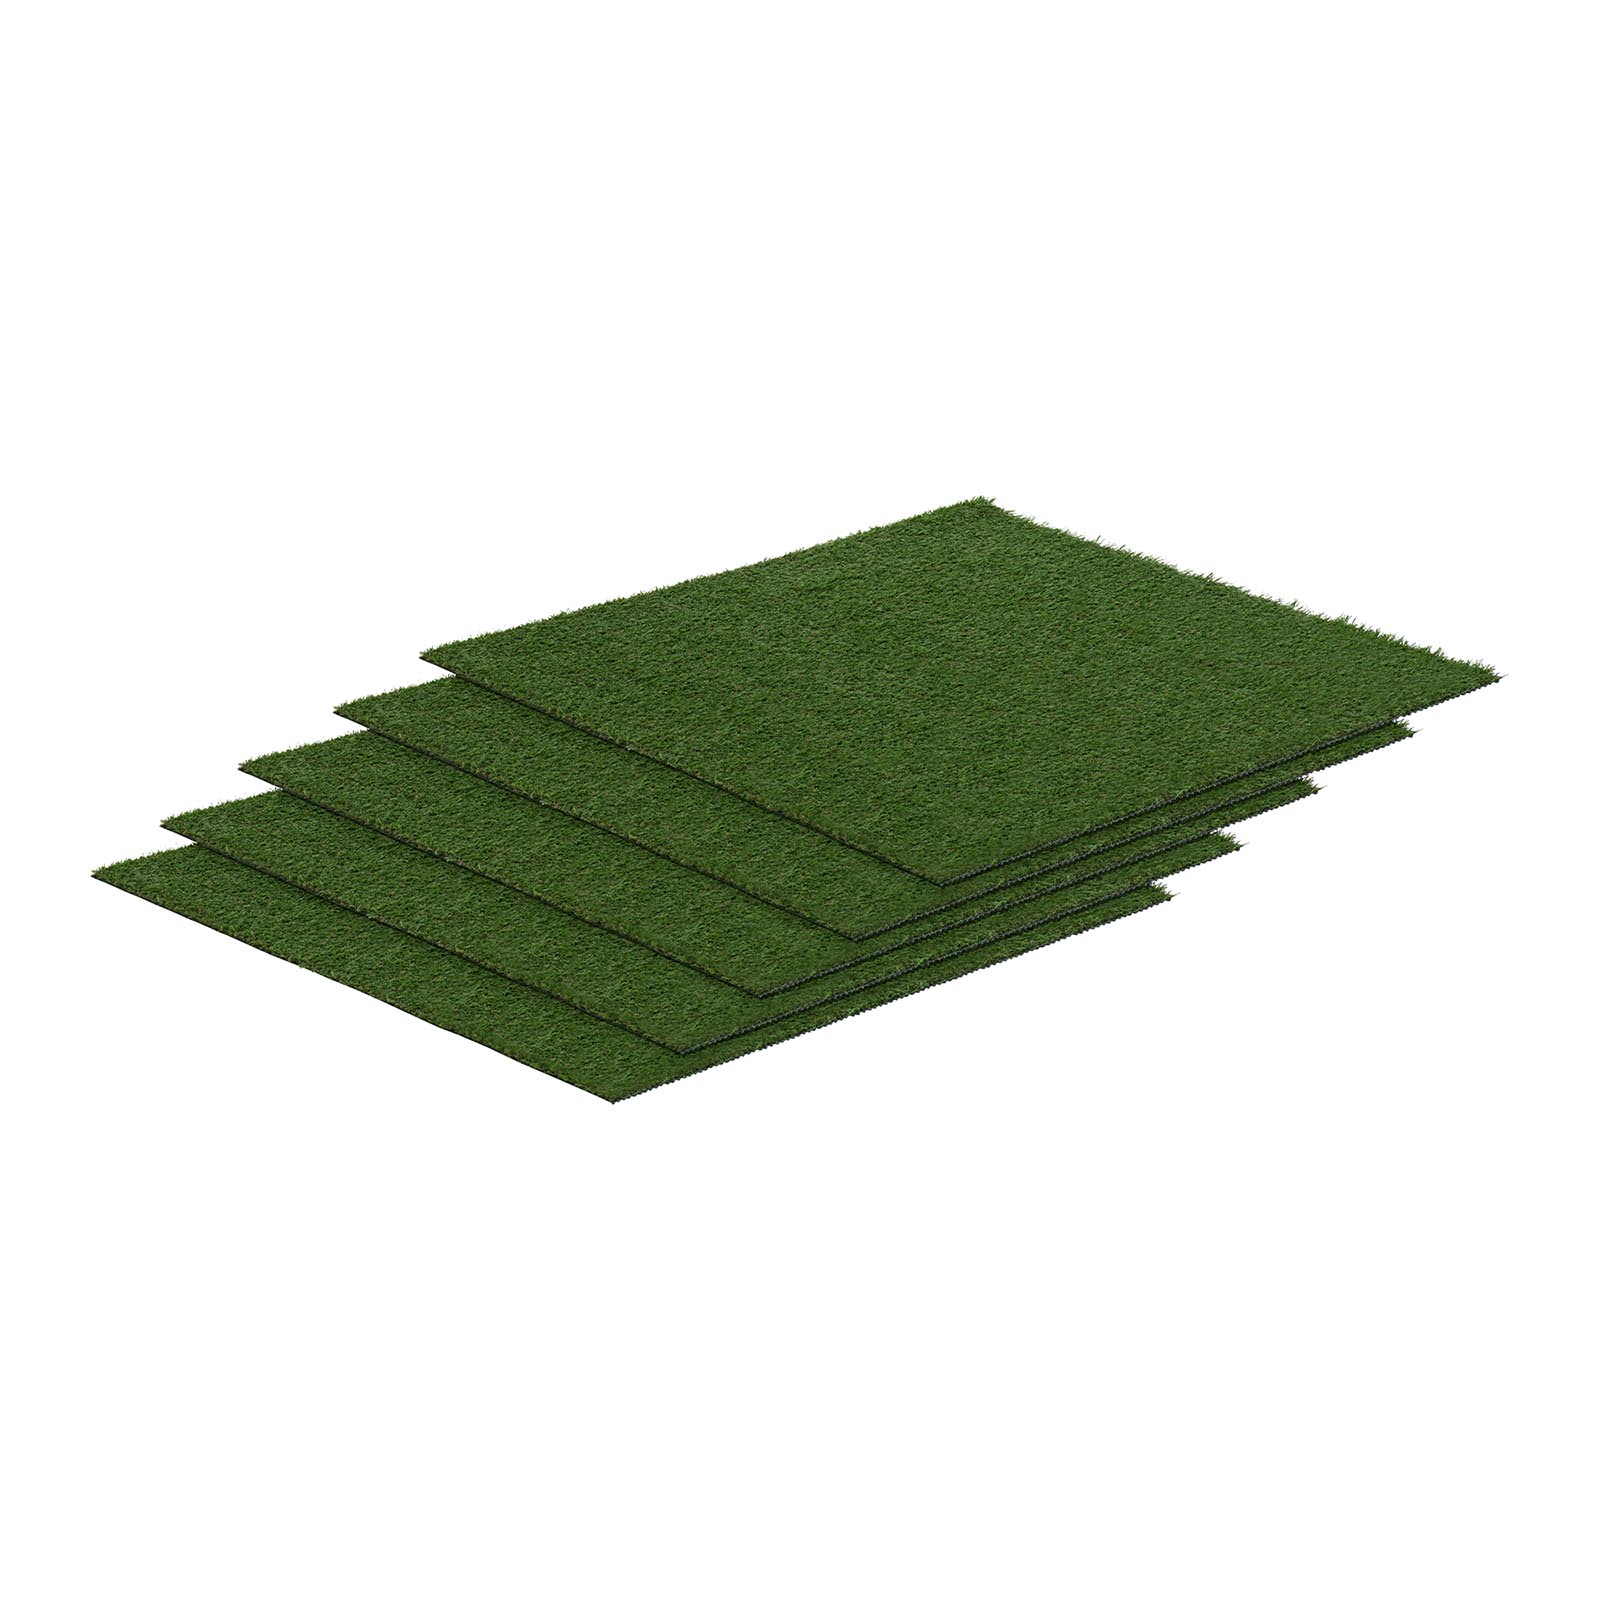 Keinotekoinen ruoho - sarja 5 - 100 x 100 cm - korkeus: 20 mm - ommeltiheys: 13/10 cm - UV-kestävä